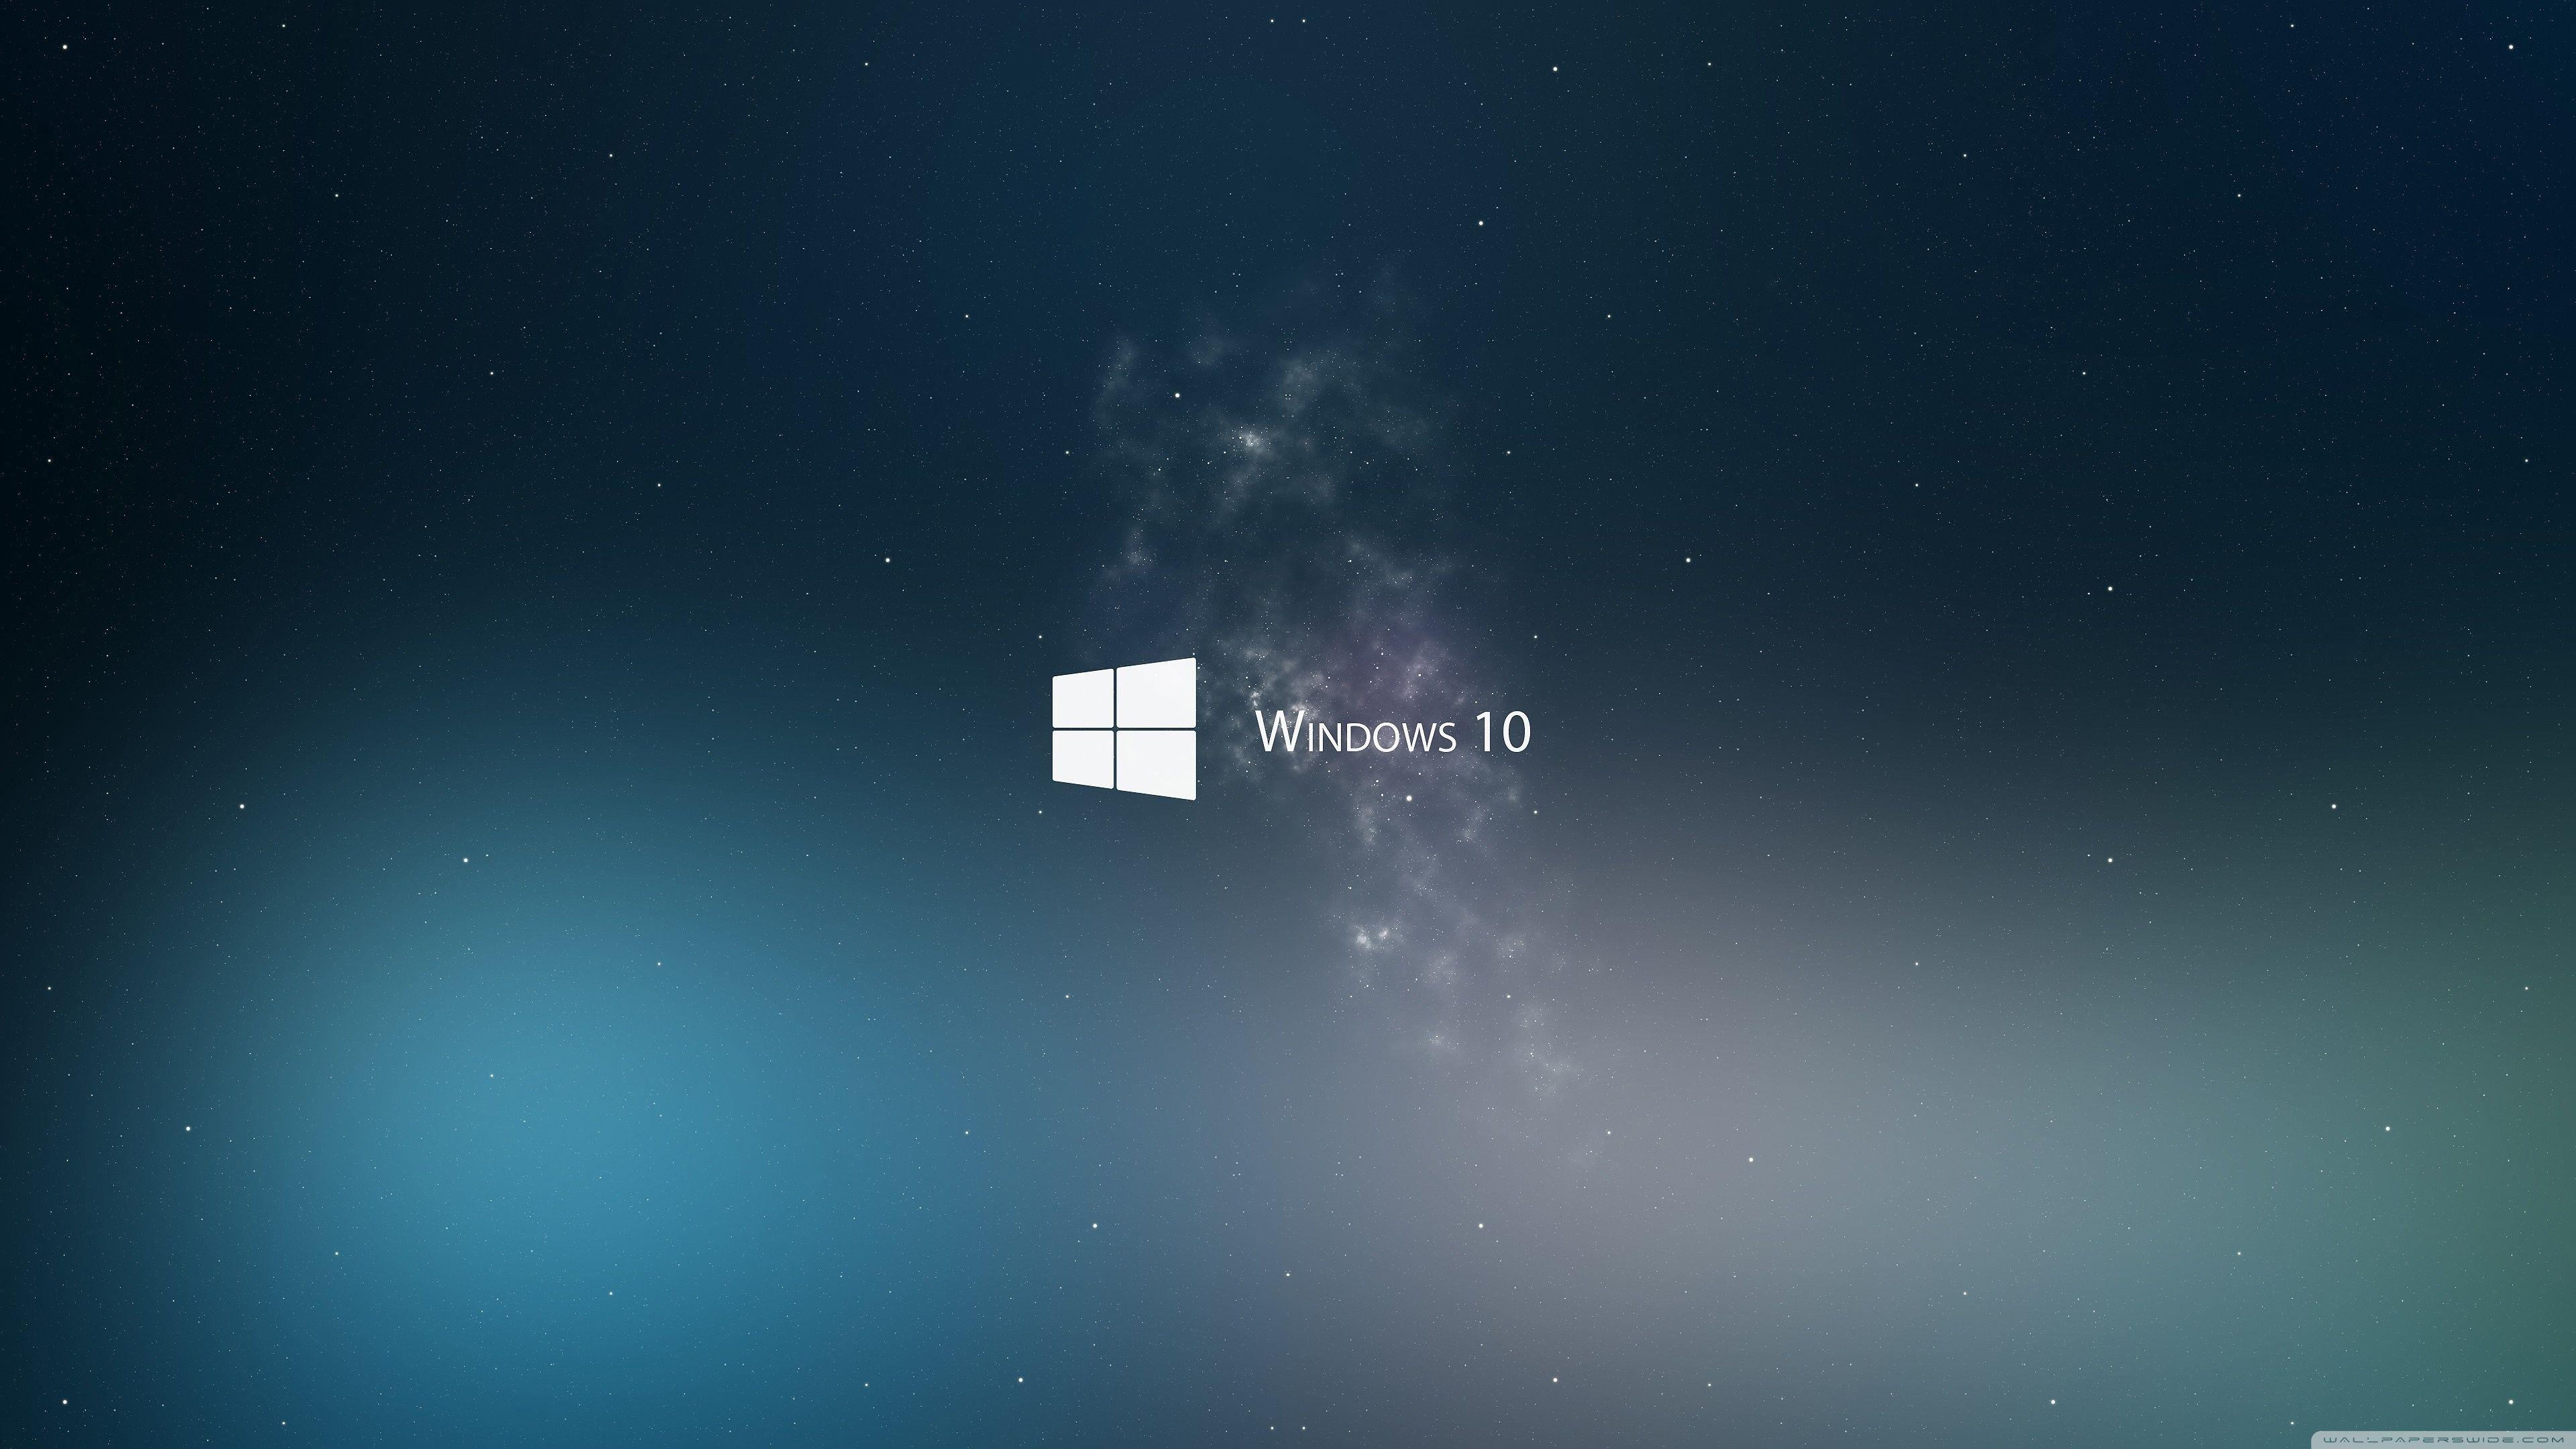 WallpapersWide ❤ Windows 10 HD Desktop Wallpapers for 4K Ultra